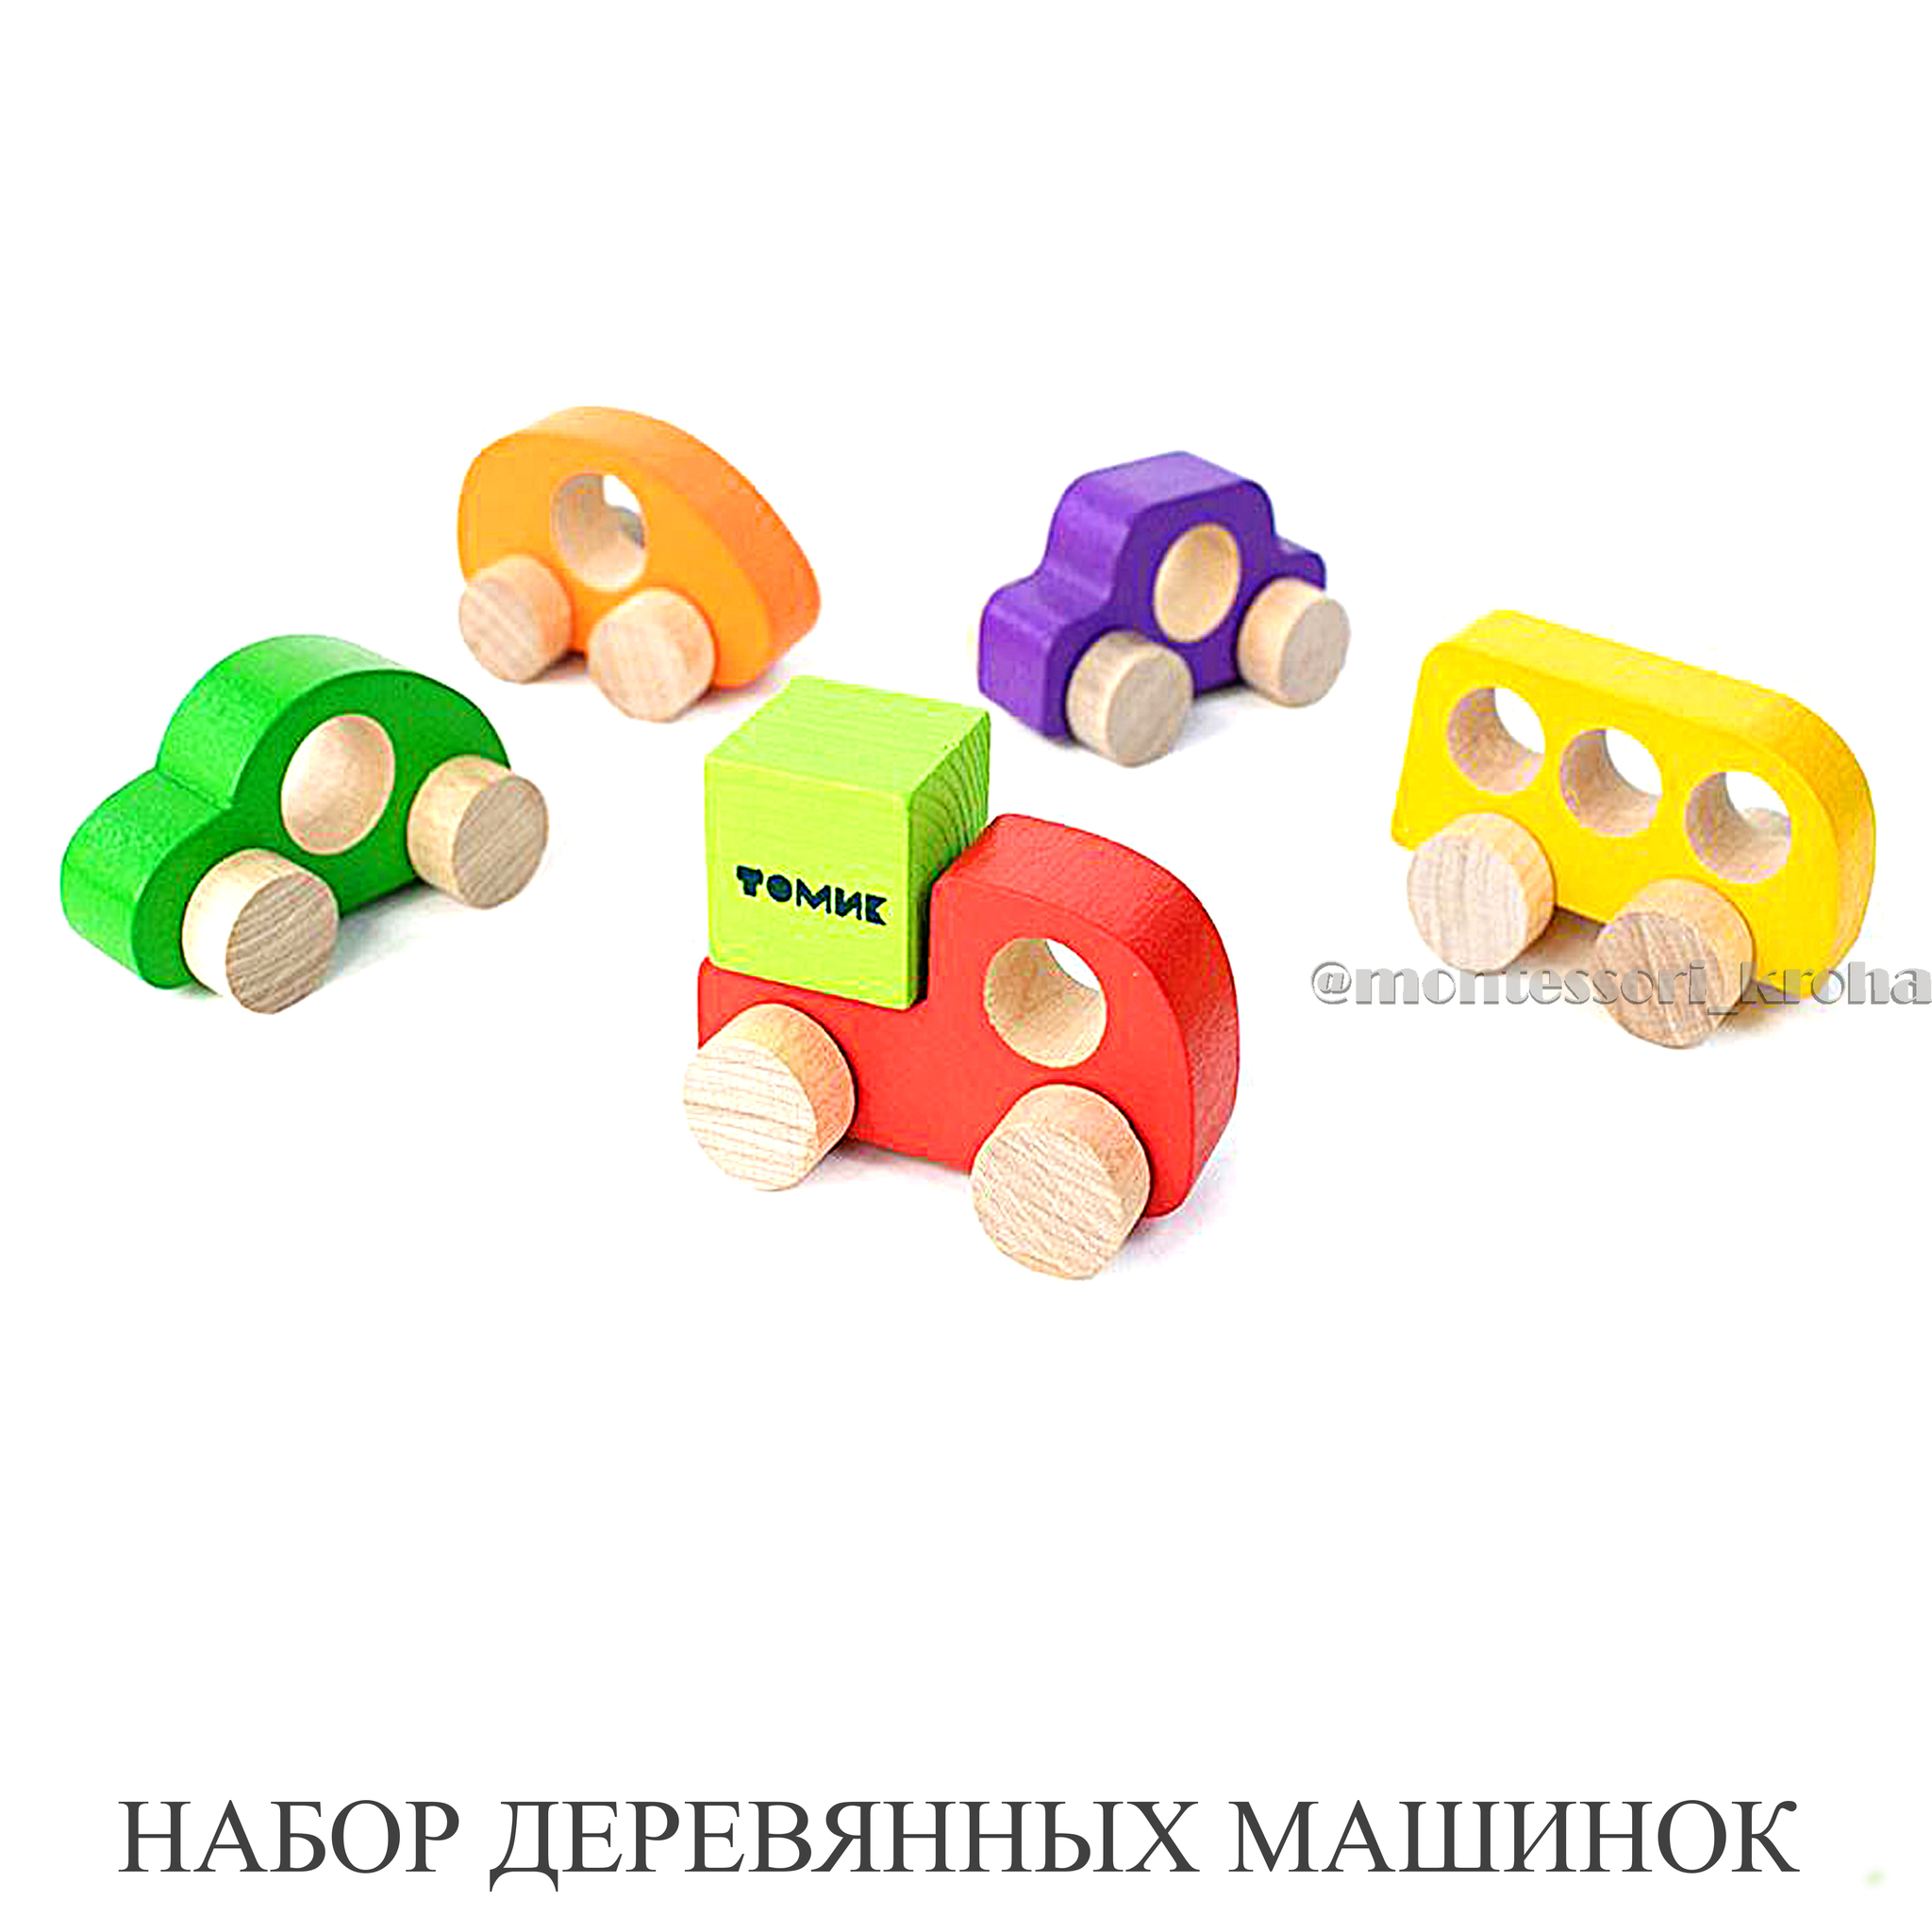 Украинский производитель деревянных игрушек Cubika™ | Woodentoys